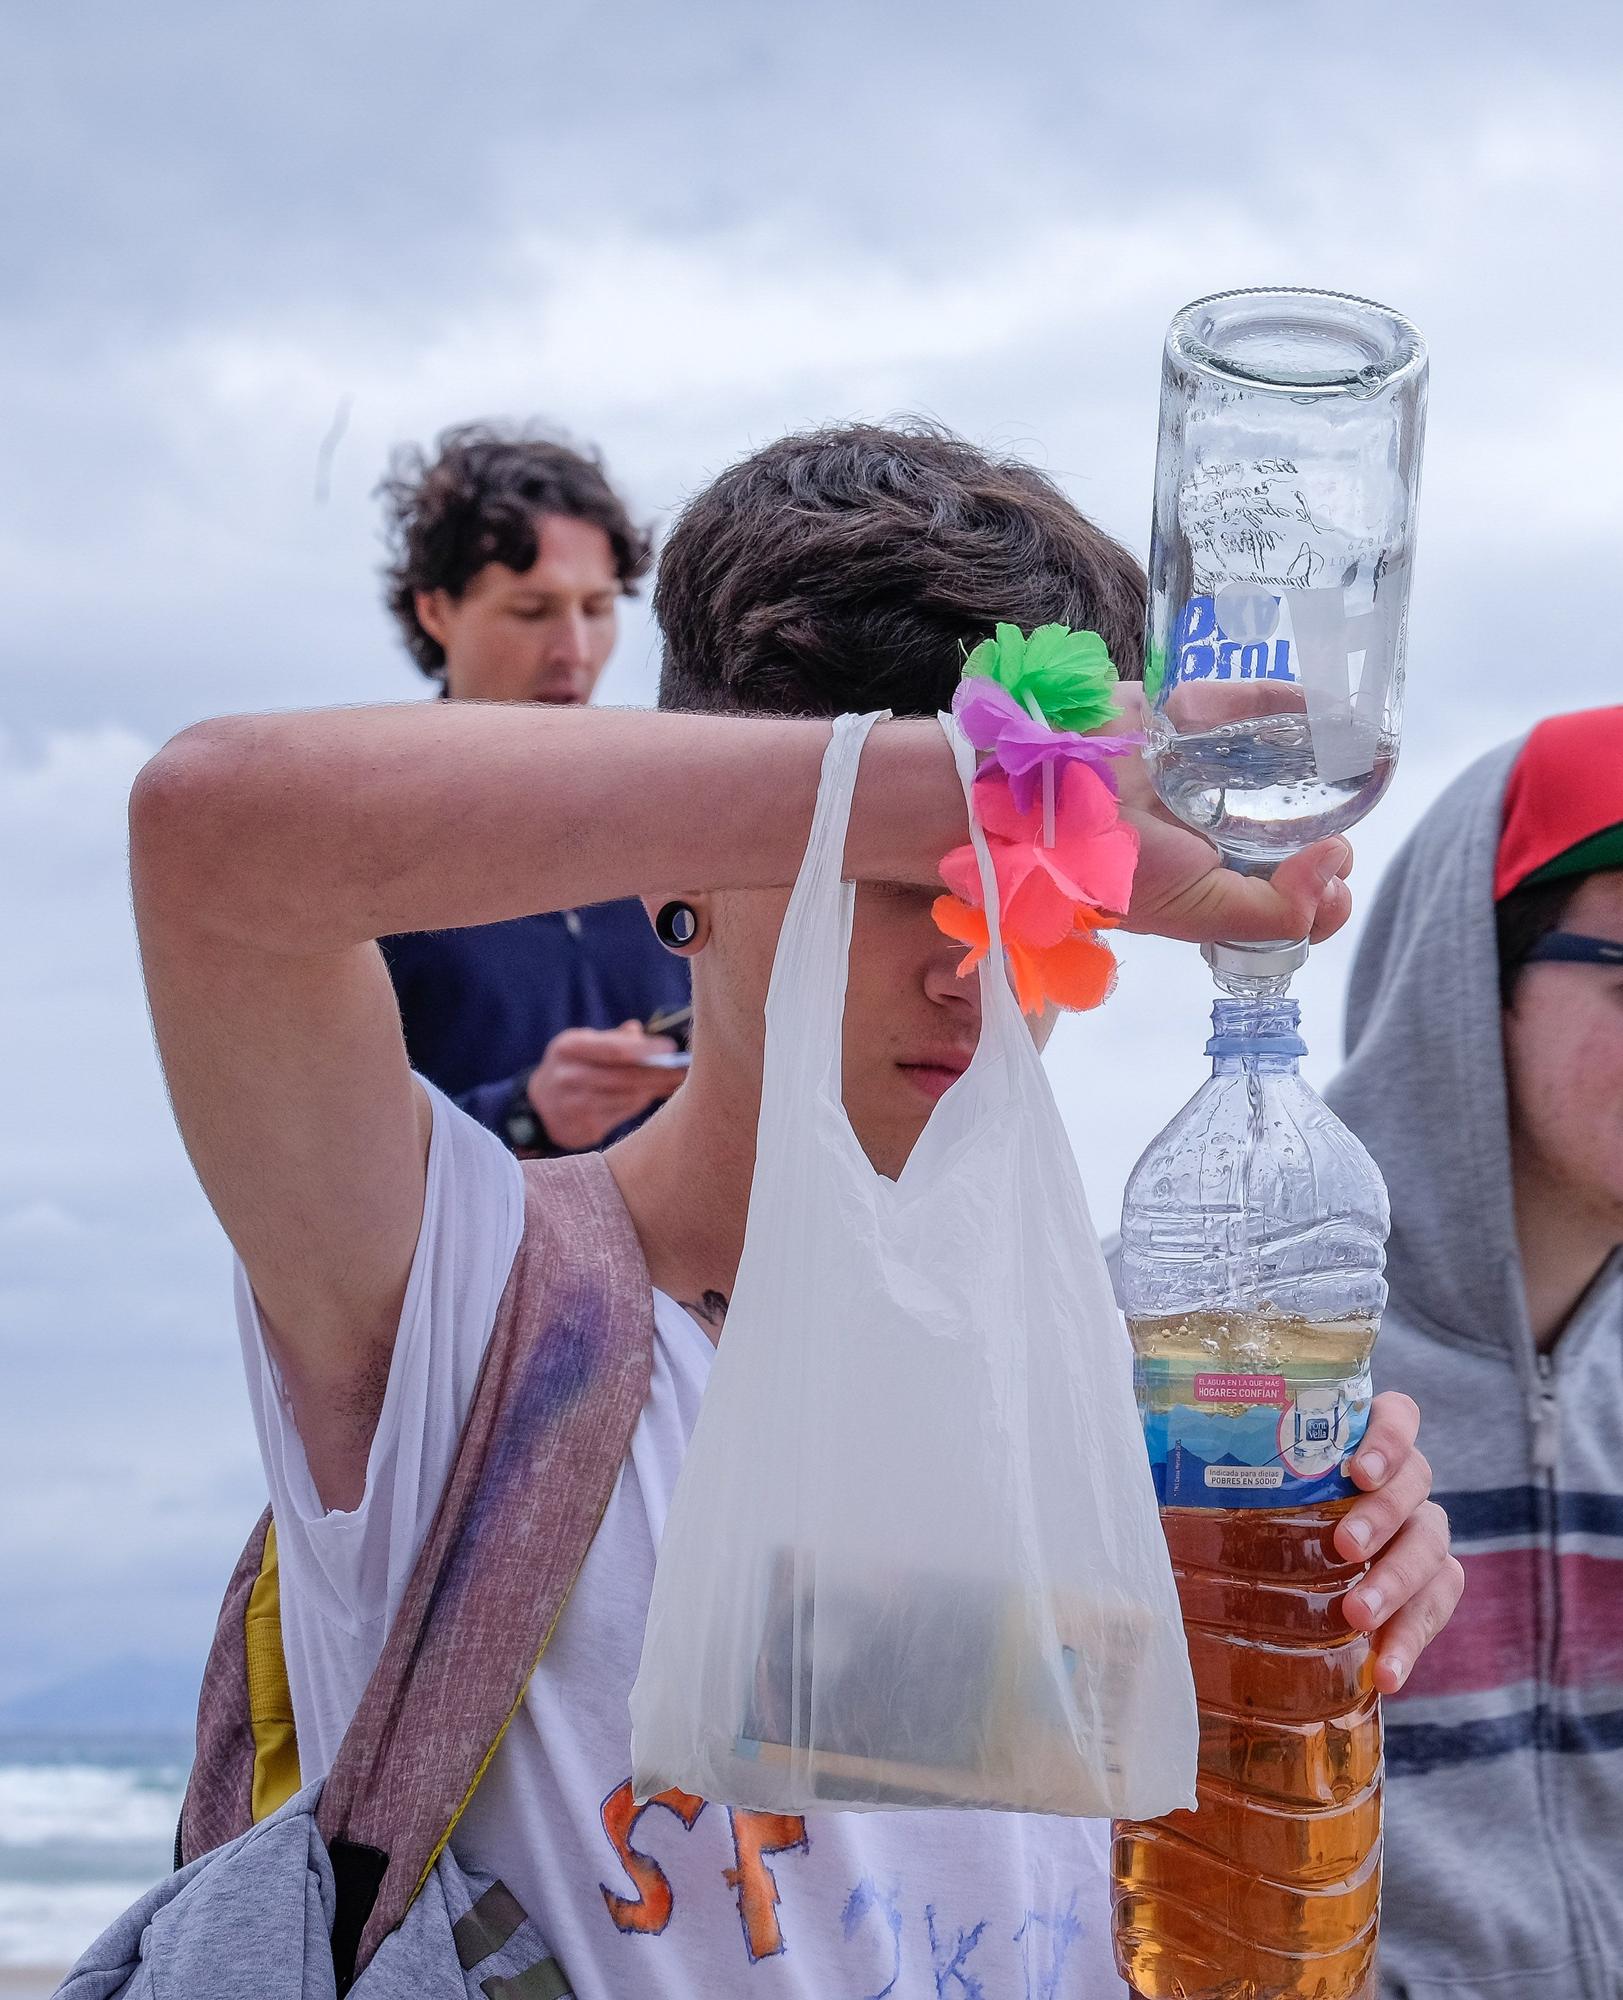 Así era el "tradicional" botellón de Santa Faz en la playa de San Juan